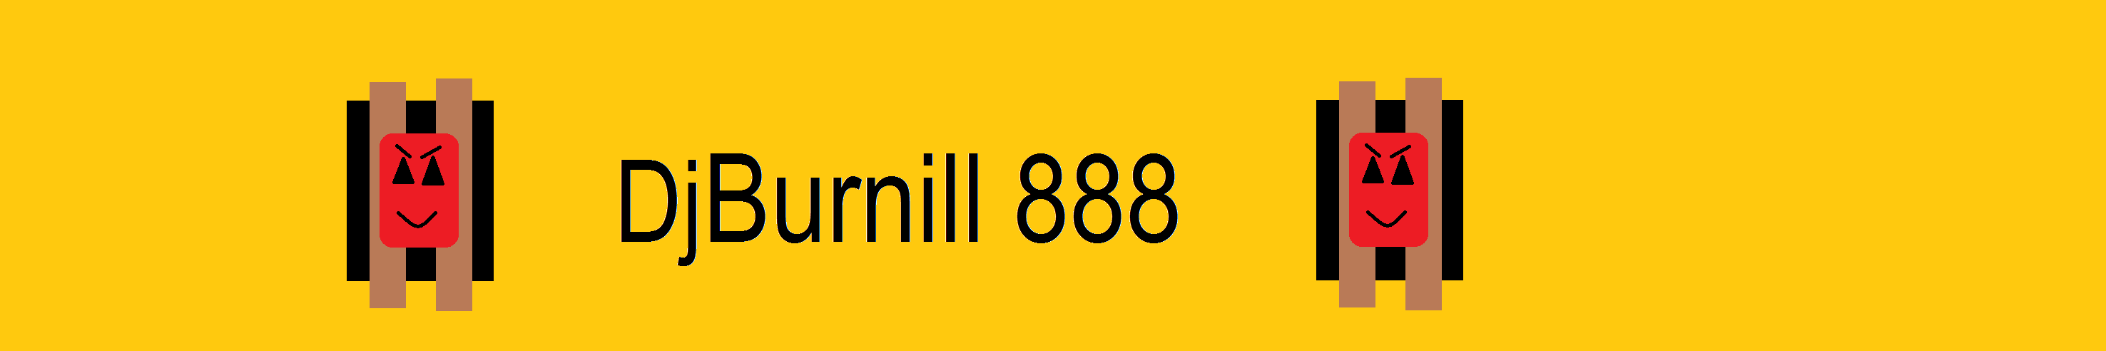 DjBurnill 888